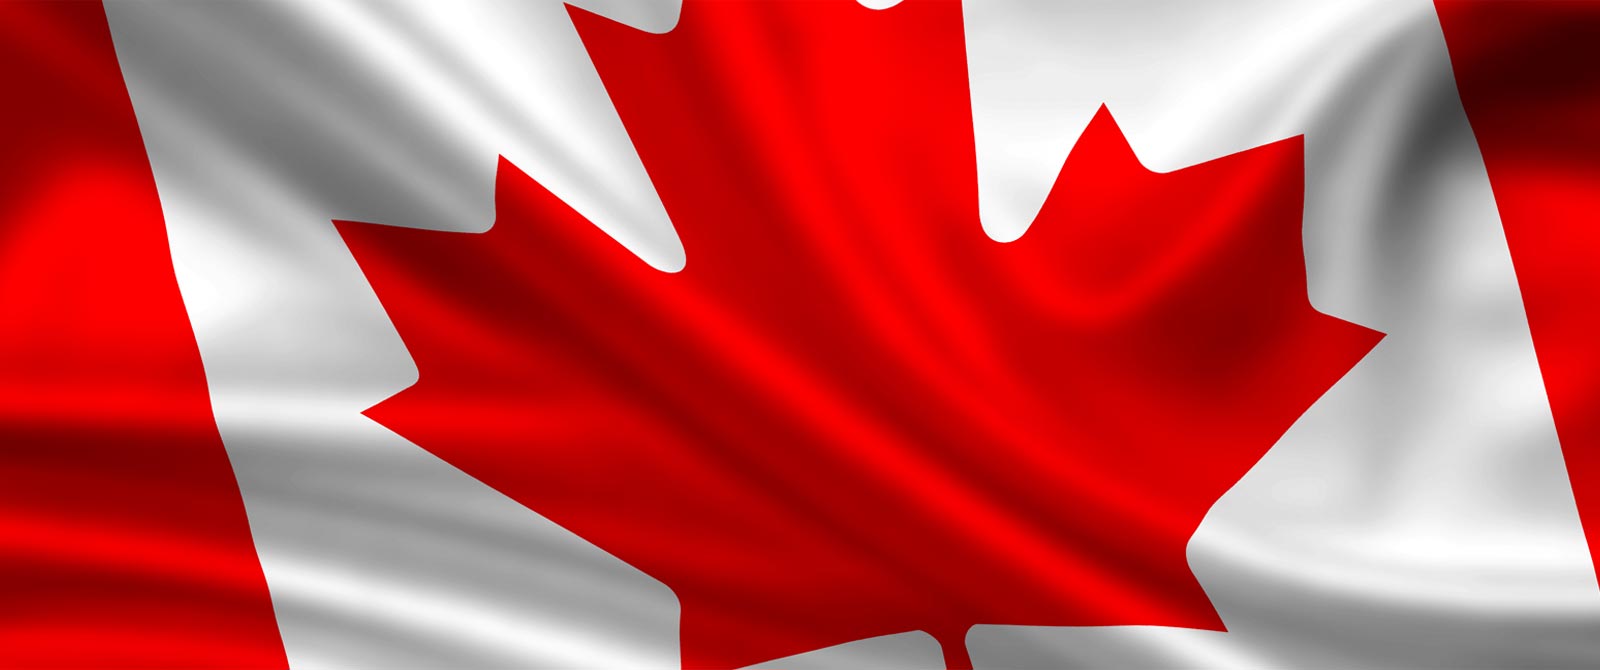 Пора разобраться почему на флаге Канады присутствует кленовый лист